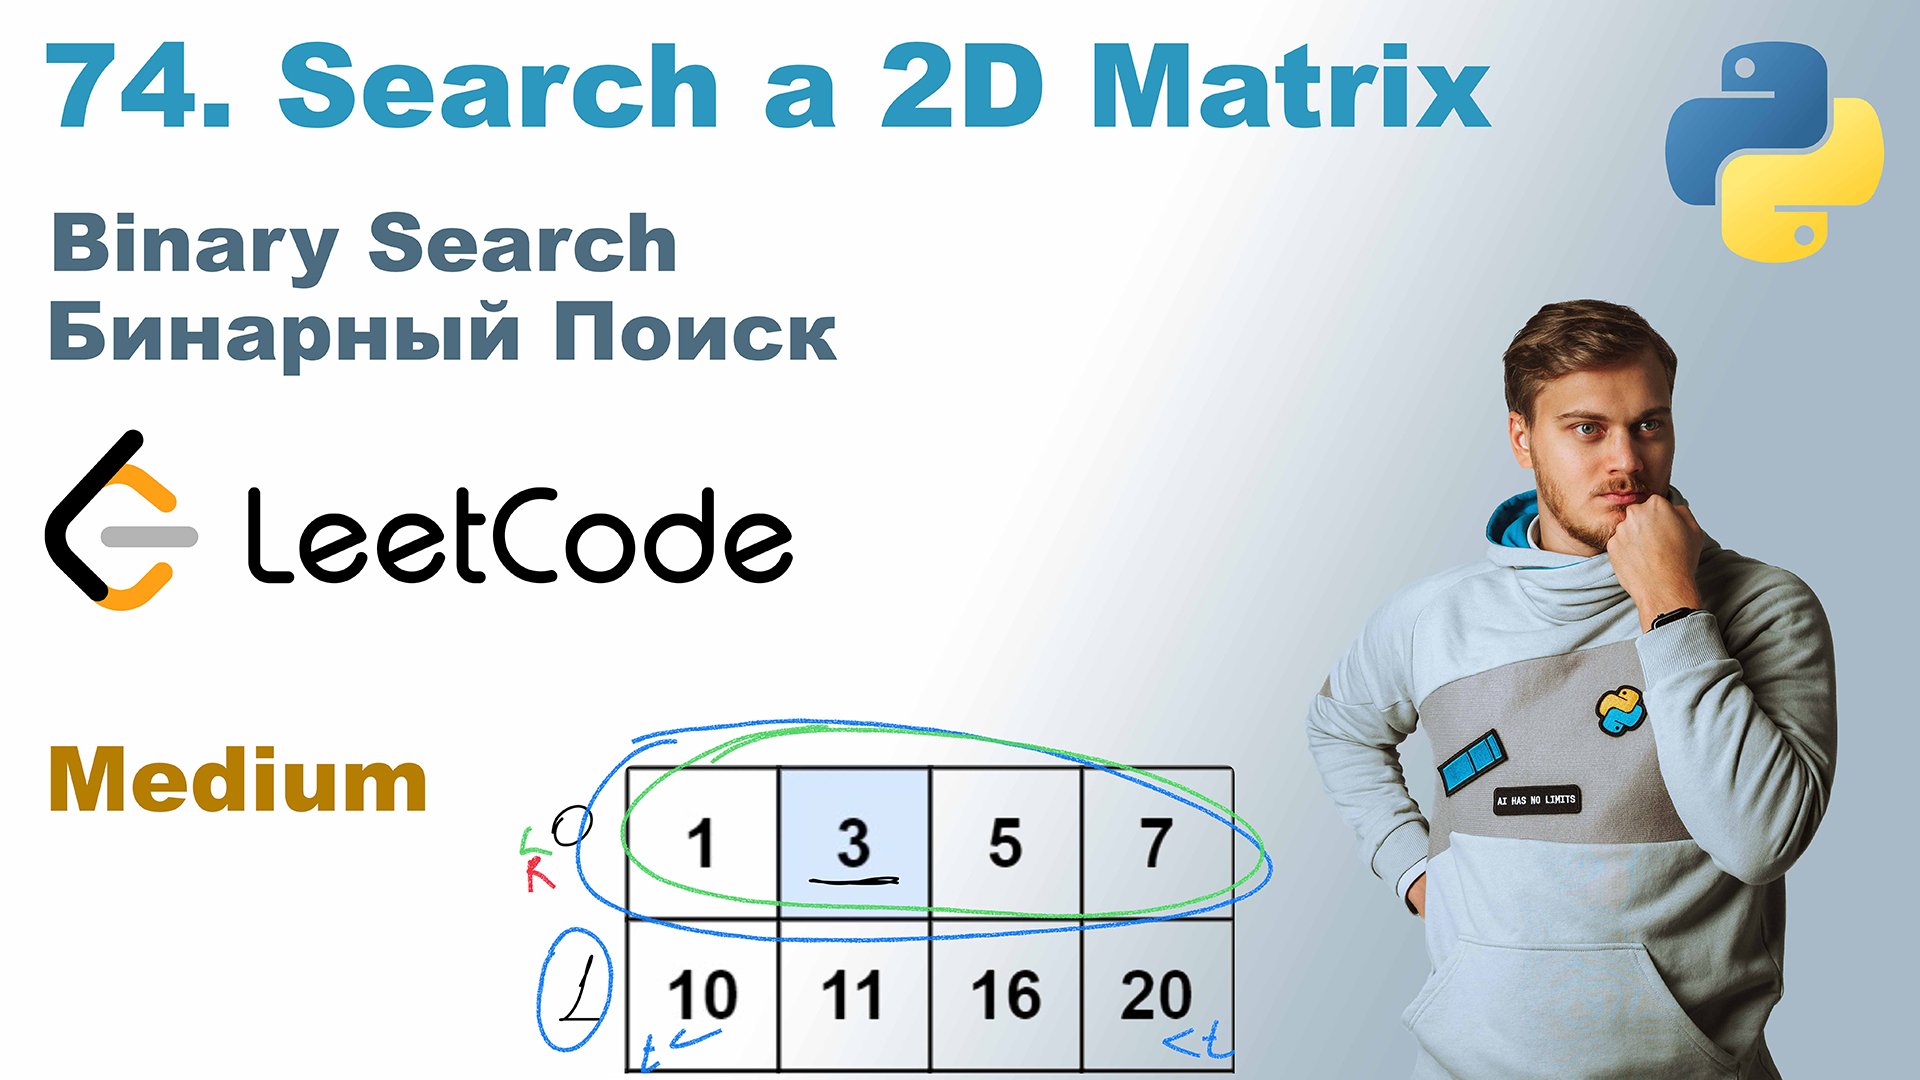 Search a 2D Matrix | Решение на Python | LeetCode 74